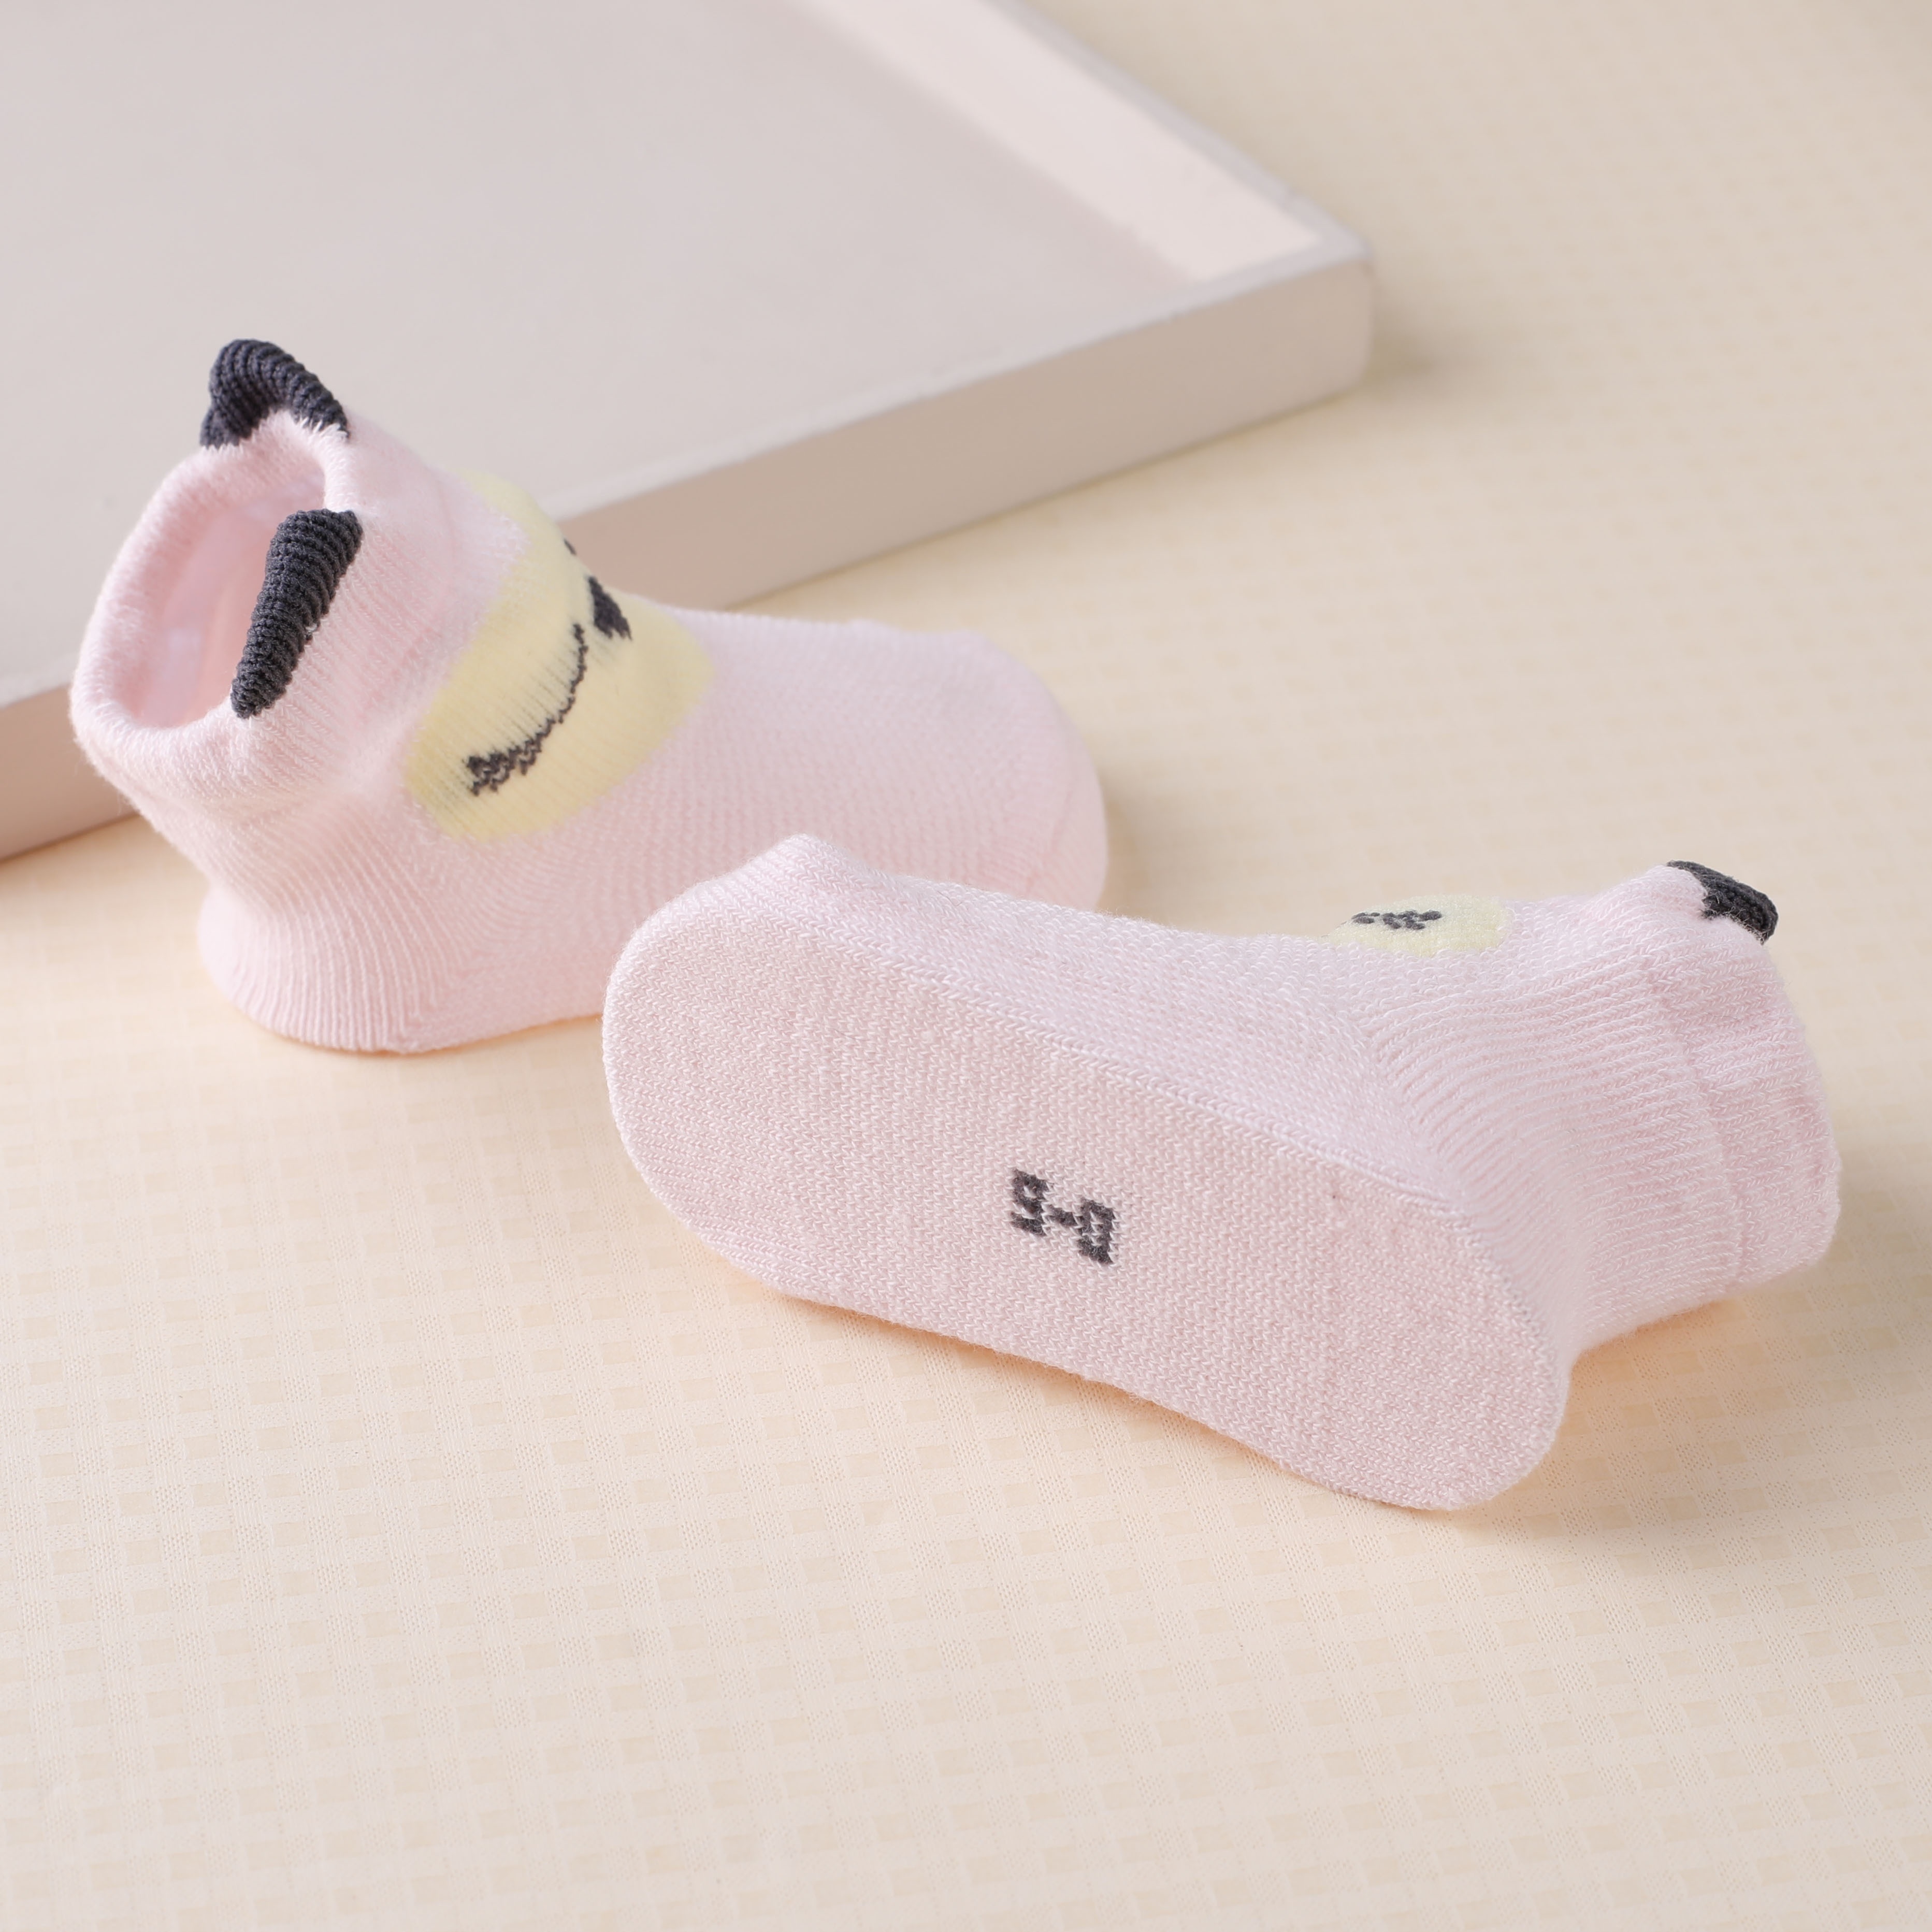 Simfamily] 5 par/lote de calcetines para bebé recién nacido